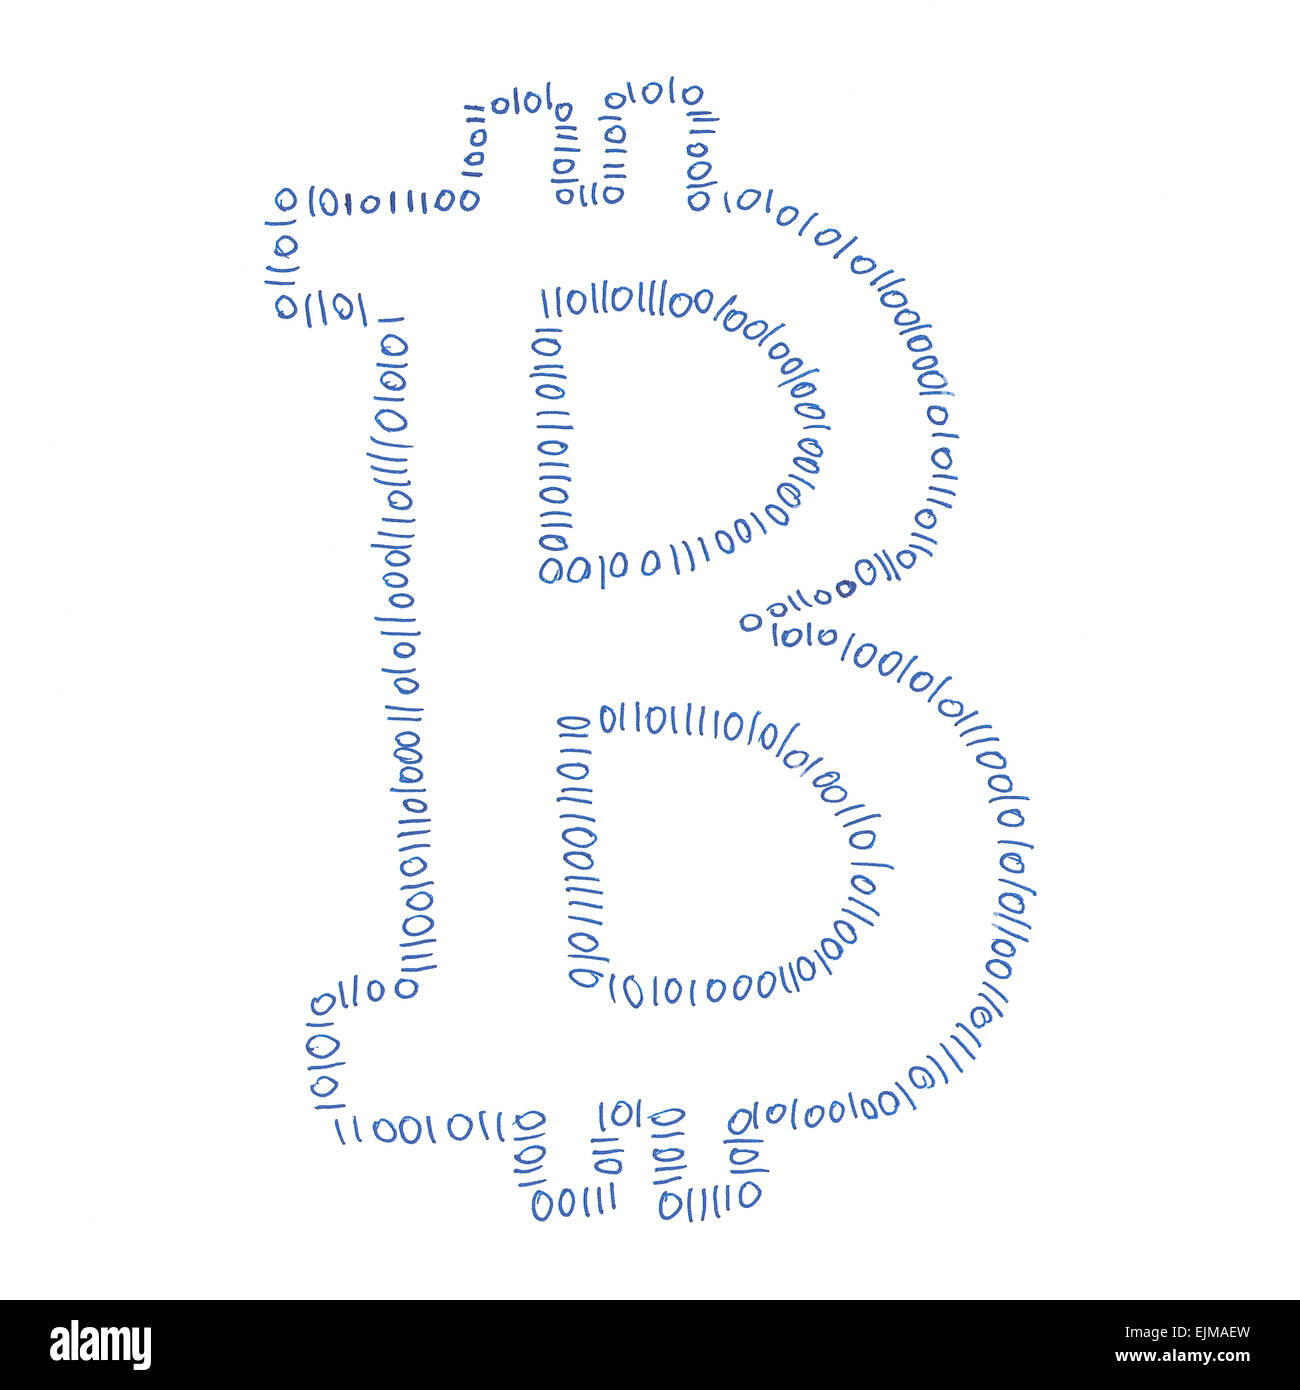 Digital Bitcoin simbolo, disegno a mano di un digitale cryptocurrency decentralizzata, lettera b su sfondo bianco. Foto Stock